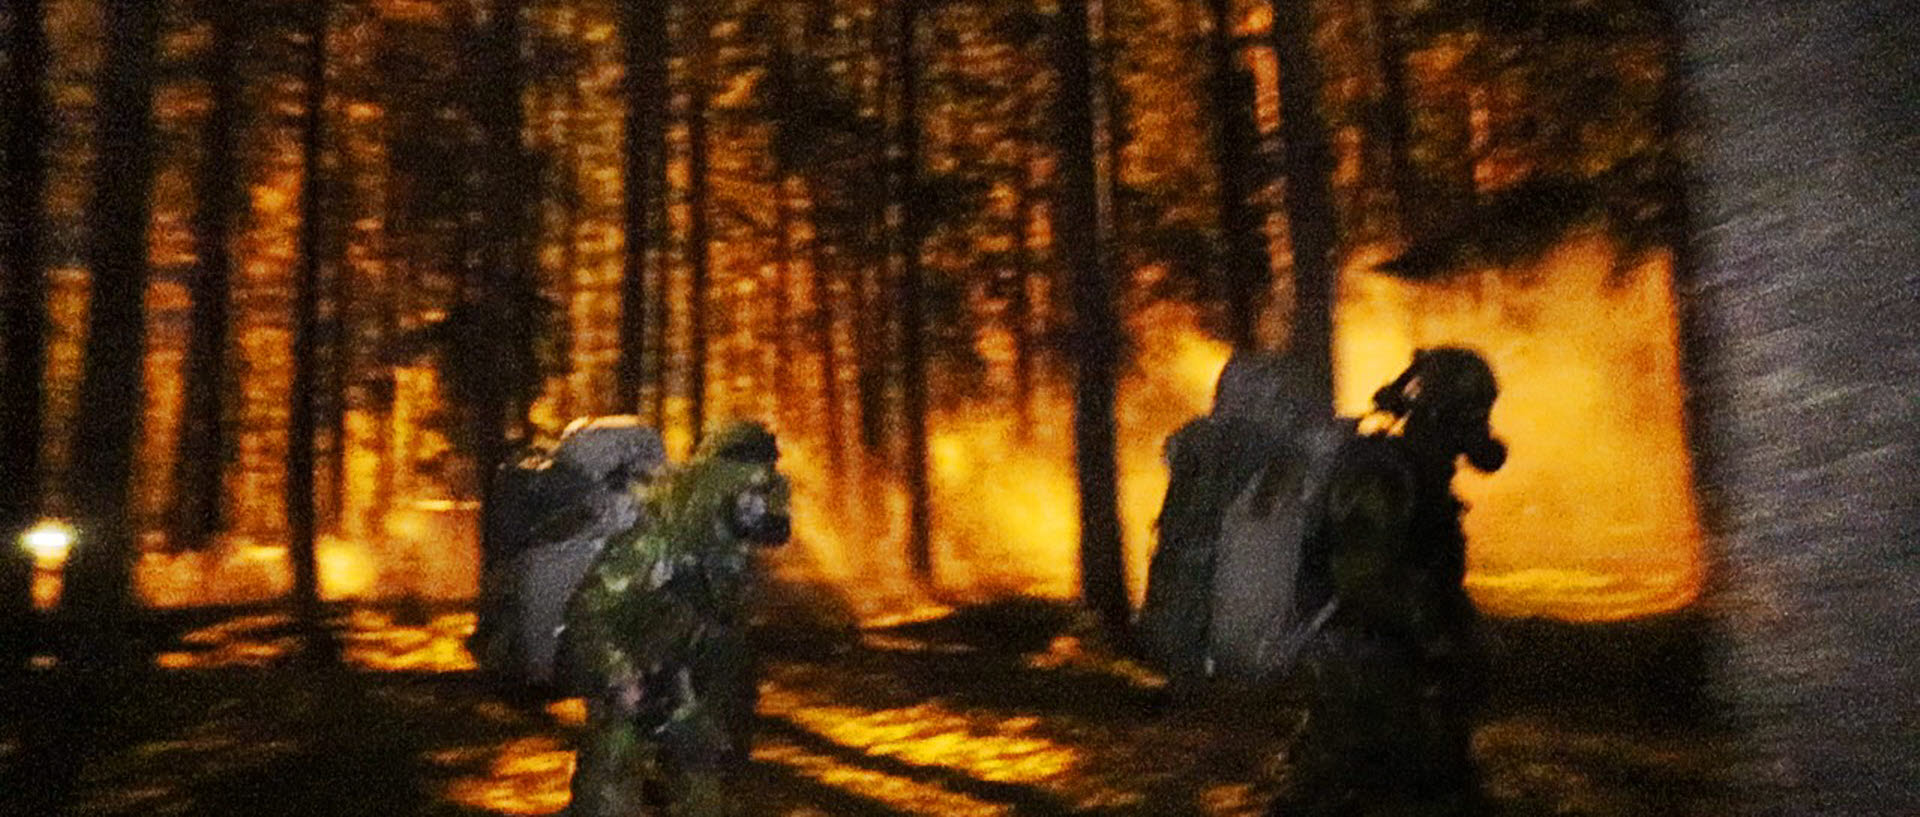 Rekryter flyr från ett eldöverfall under övningen Aldrig Ge upp.